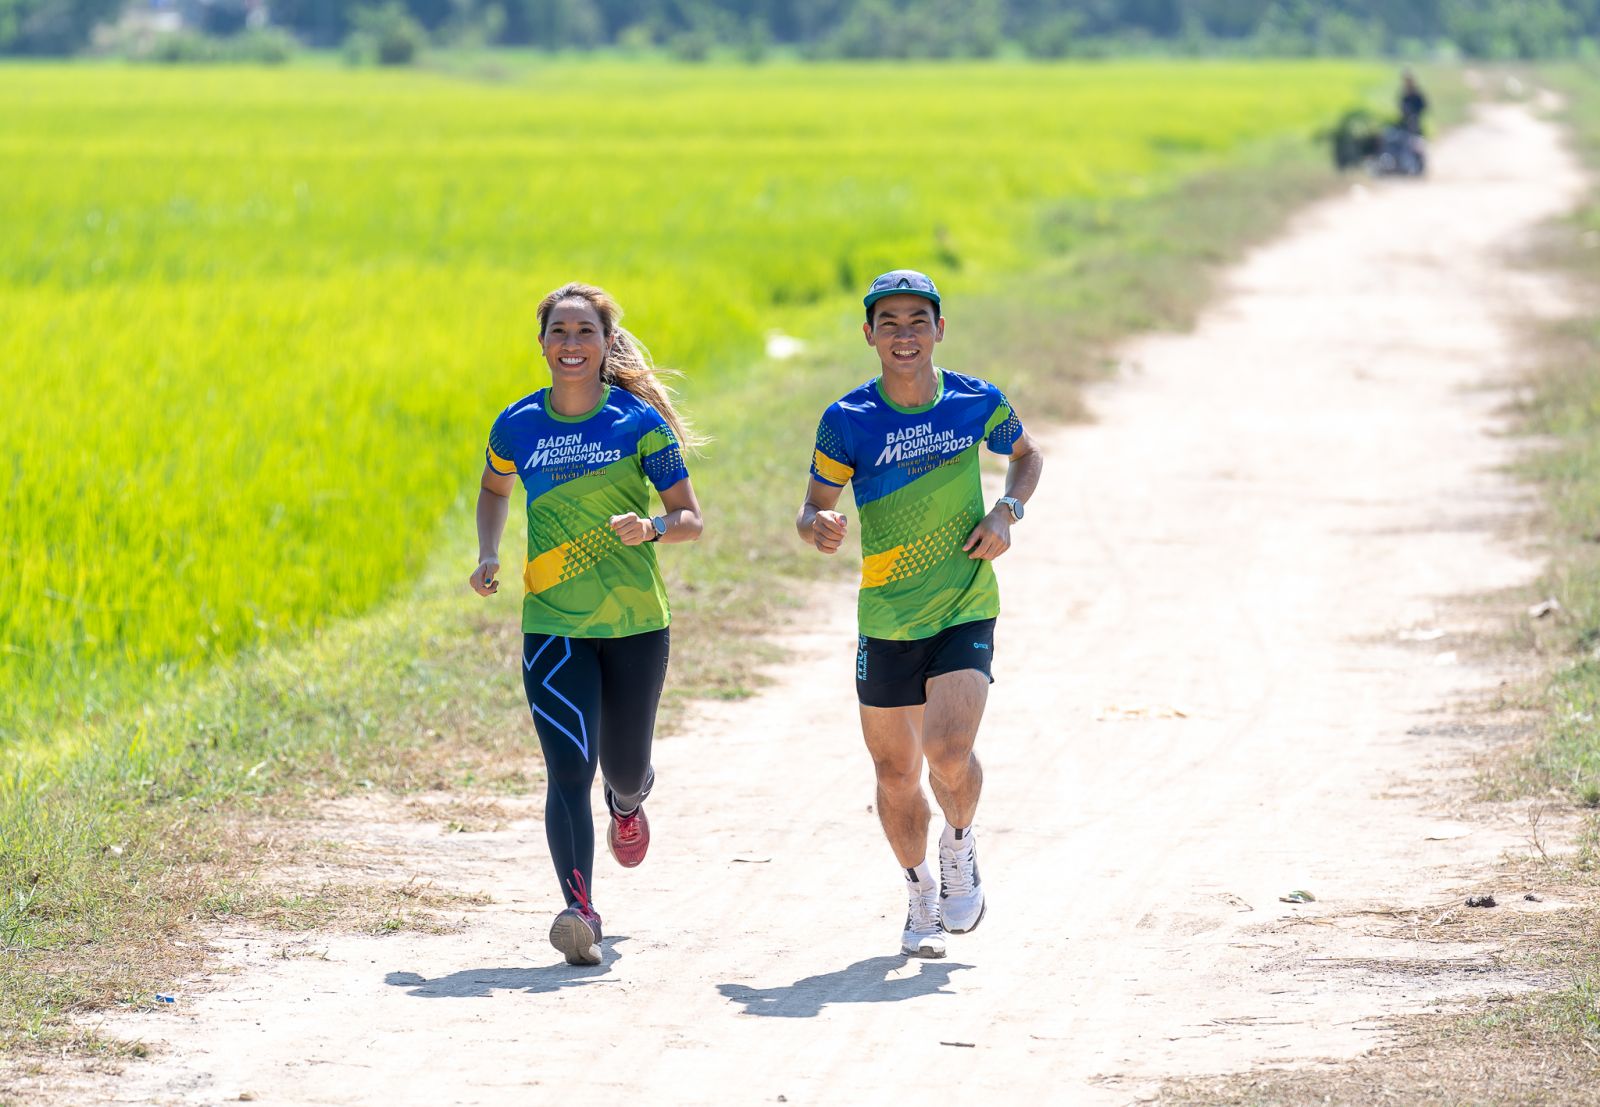 VĐV Thanh Vũ và Trọng Nhơn trên đường chạy tại Tây Ninh